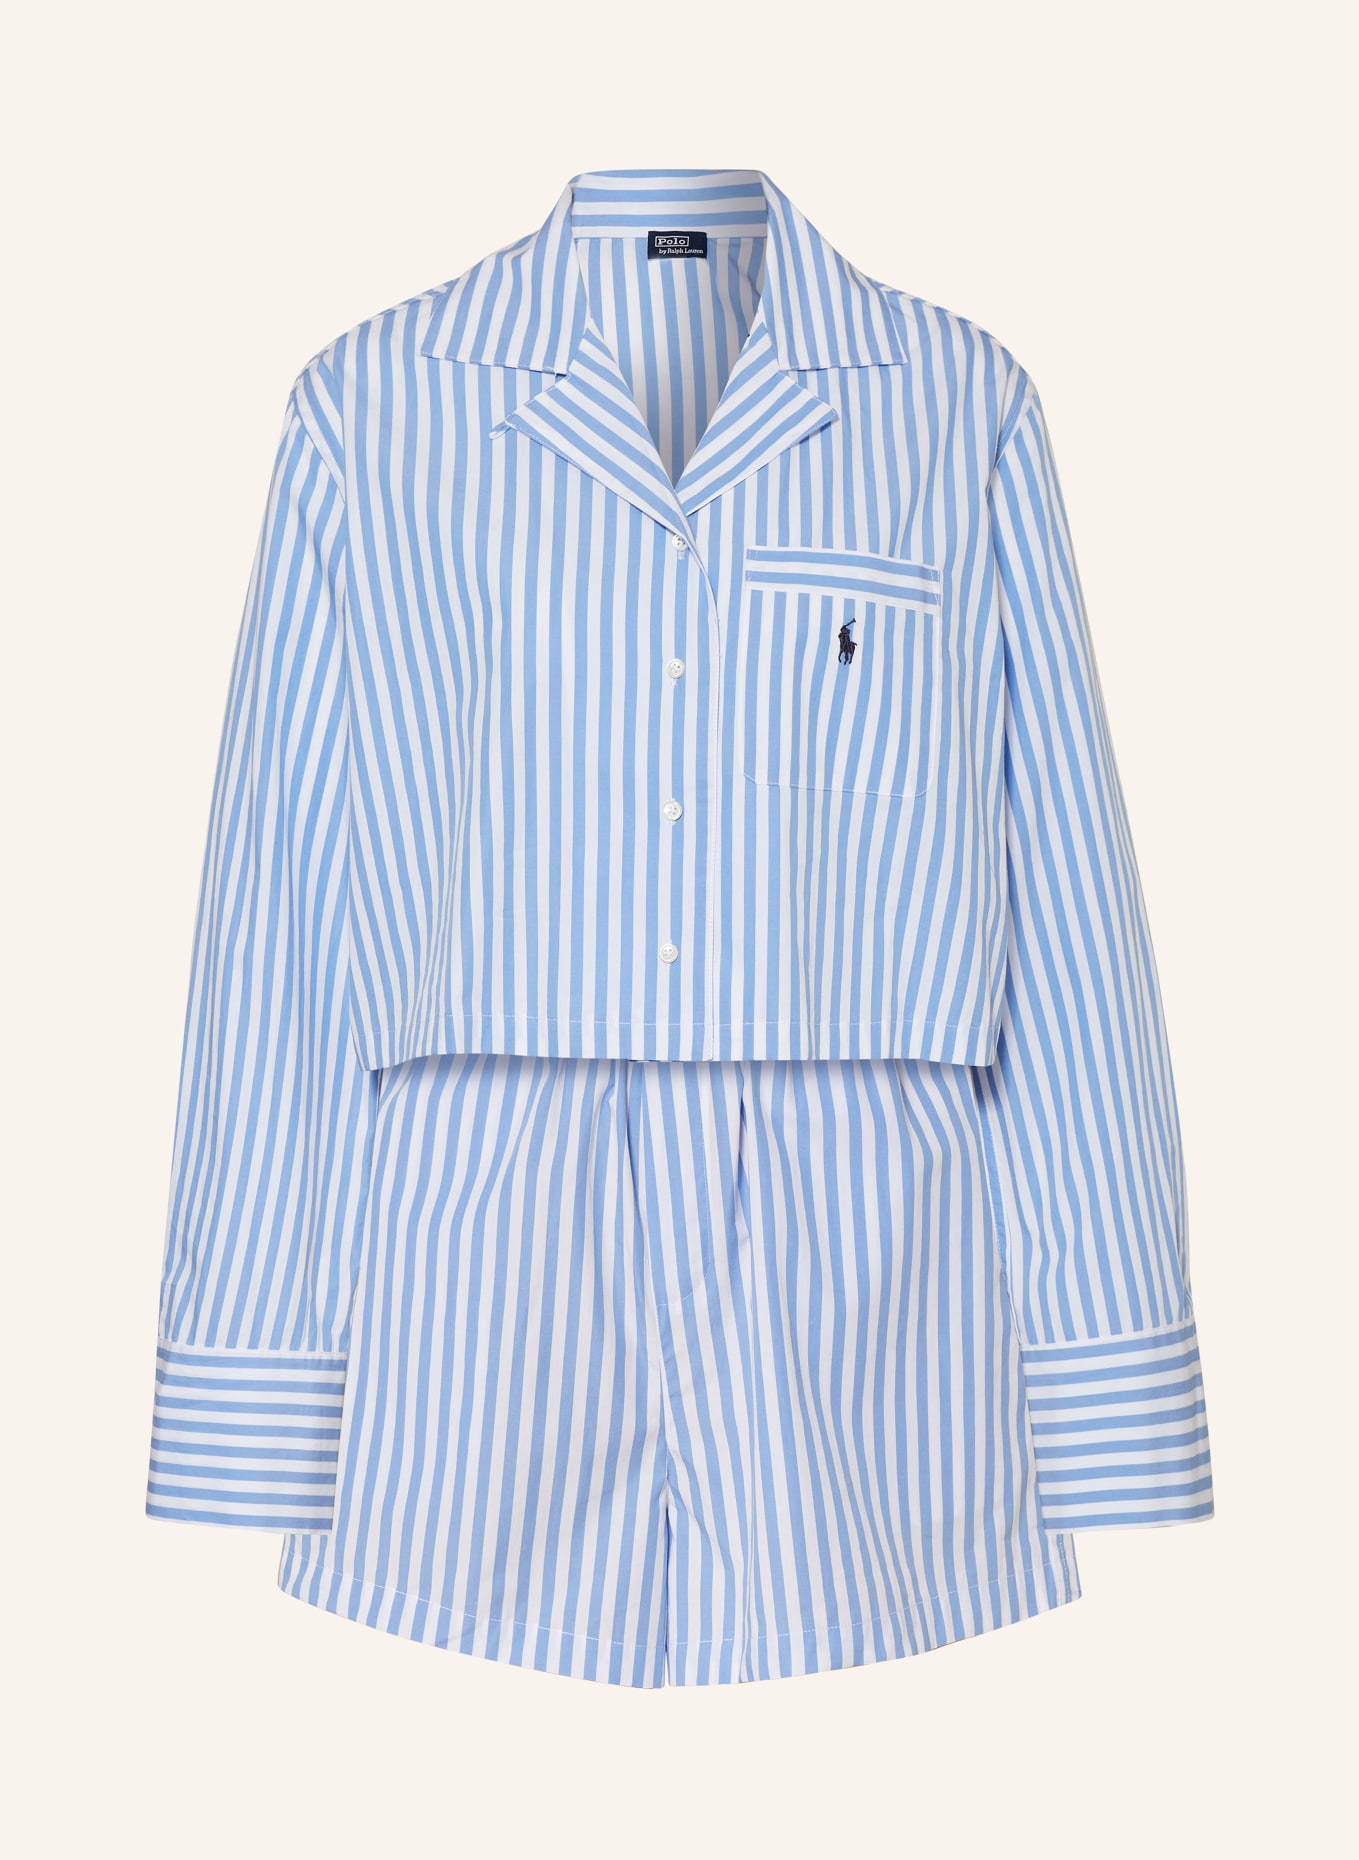 POLO RALPH LAUREN Schlafanzug, Farbe: BLAU/ WEISS (Bild 1)